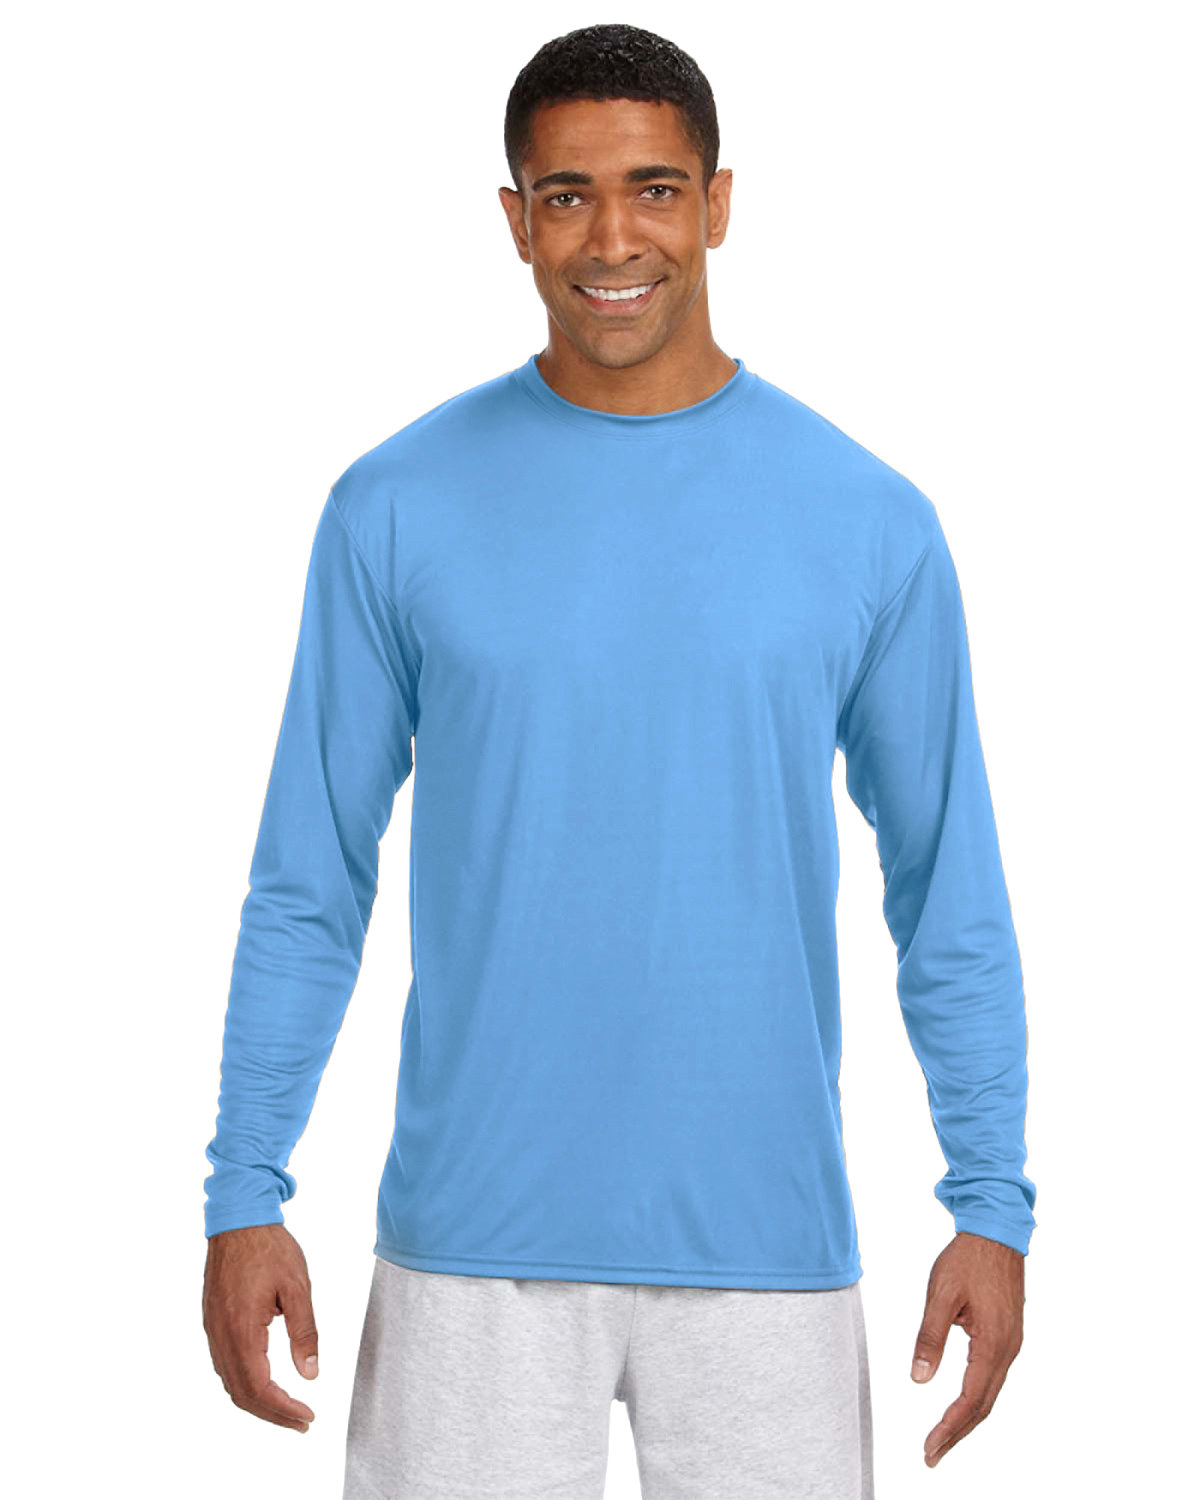 A4 Men's Cooling Performance Long Sleeve T-Shirt light blue 